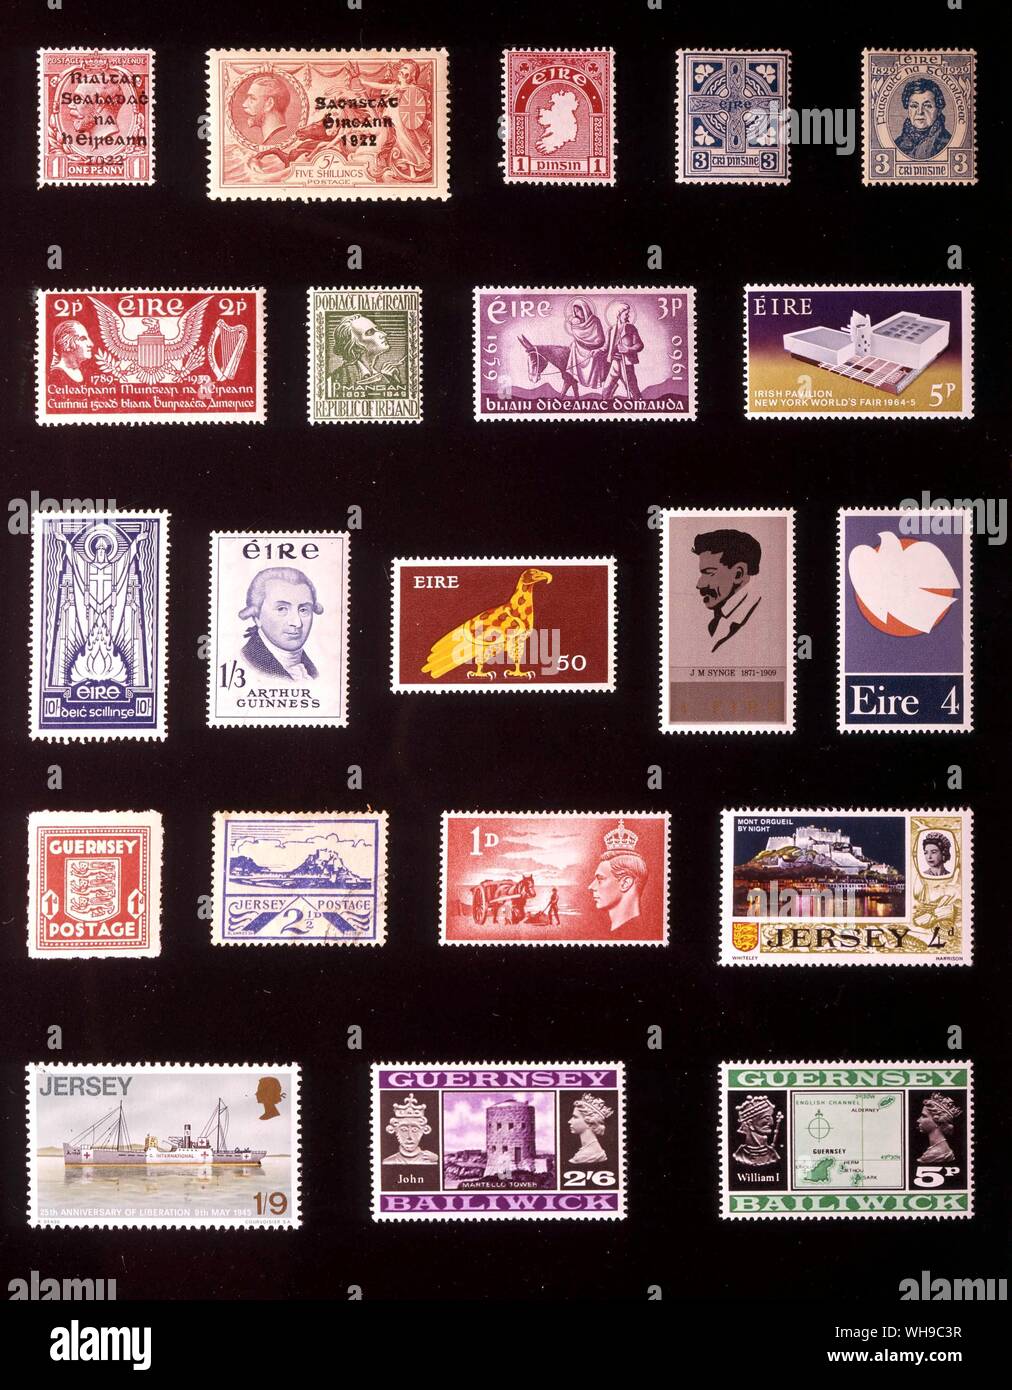 EUROPE - Îles Britanniques ADMINISTRATIONS POSTALES INDÉPENDANTES : (de gauche à droite) 1. Gouvernement provisoire d'Irlande, 1 penny, 1922, 2. État libre d'Irlande, 5 shillings, 1935, 3. Eire (Irlande), 1 penny, 1923, 4. Eire, 3 pence, 1923, 5. 3 pence, 1929, 6. 2 pence, 1939, 7. 1 penny, 1949, 8. 3 pence, 1960, 9. 5 pence, 1964, 10. 10 shillings, 1937, 11. 1 shilling 3 pence, 1959, 12. 50 nouveaux pence, 1971, 13. 4 nouveaux pence, 1972, 15. Guernesey, 1 penny, 1941, 16. Jersey, 2,5 pence, 1943, 17. Channel Islands, 1 penny, 1948, 18. Jersey, 4 pence, 1969, 19. Jersey, 1 shilling 9 pence, 1970, 20. Guernesey, 2 Banque D'Images